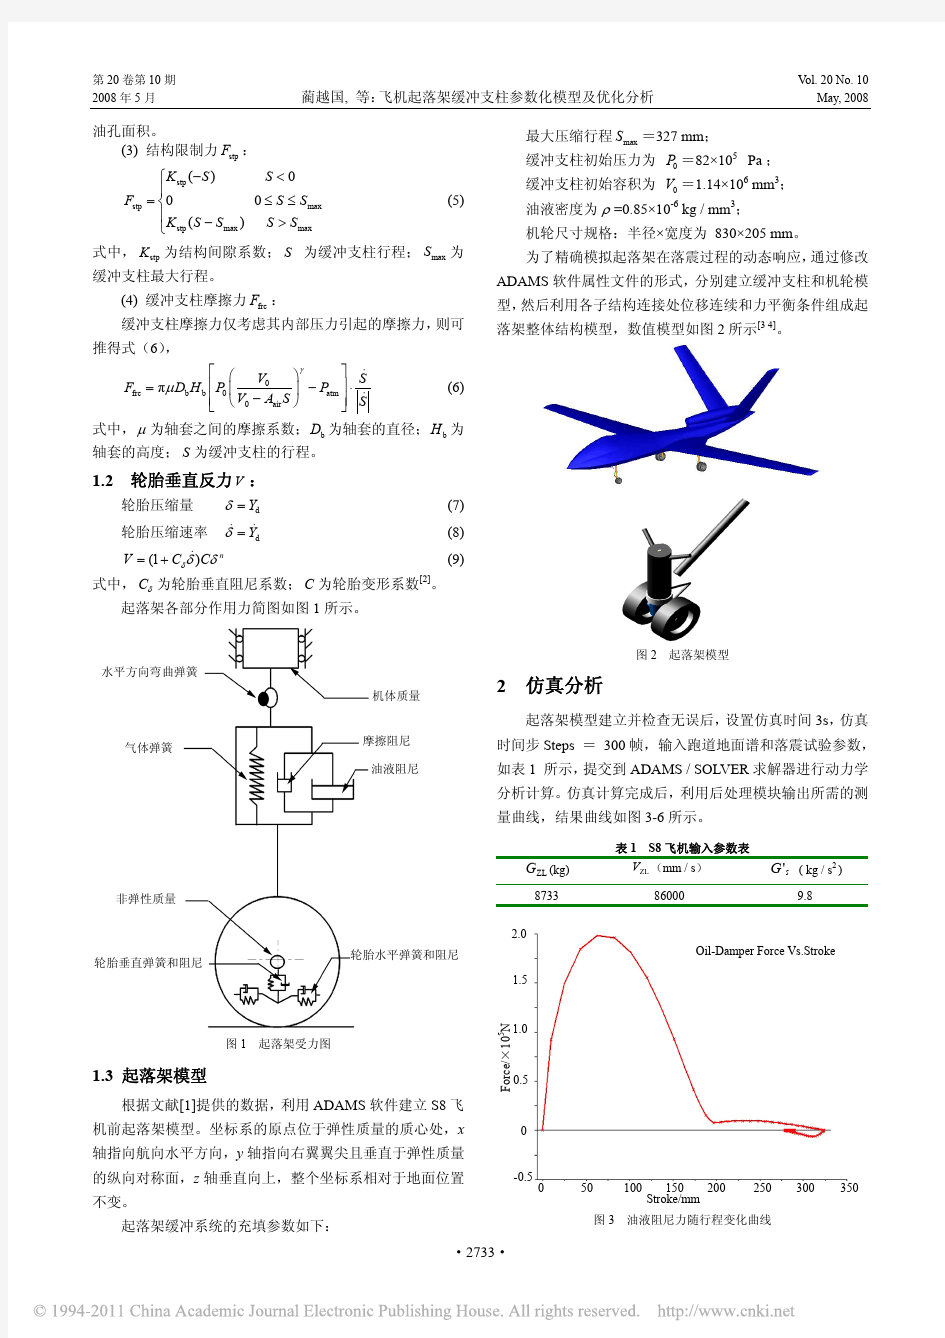 飞机起落架缓冲支柱参数化模型及优化分析_蔺越国1206